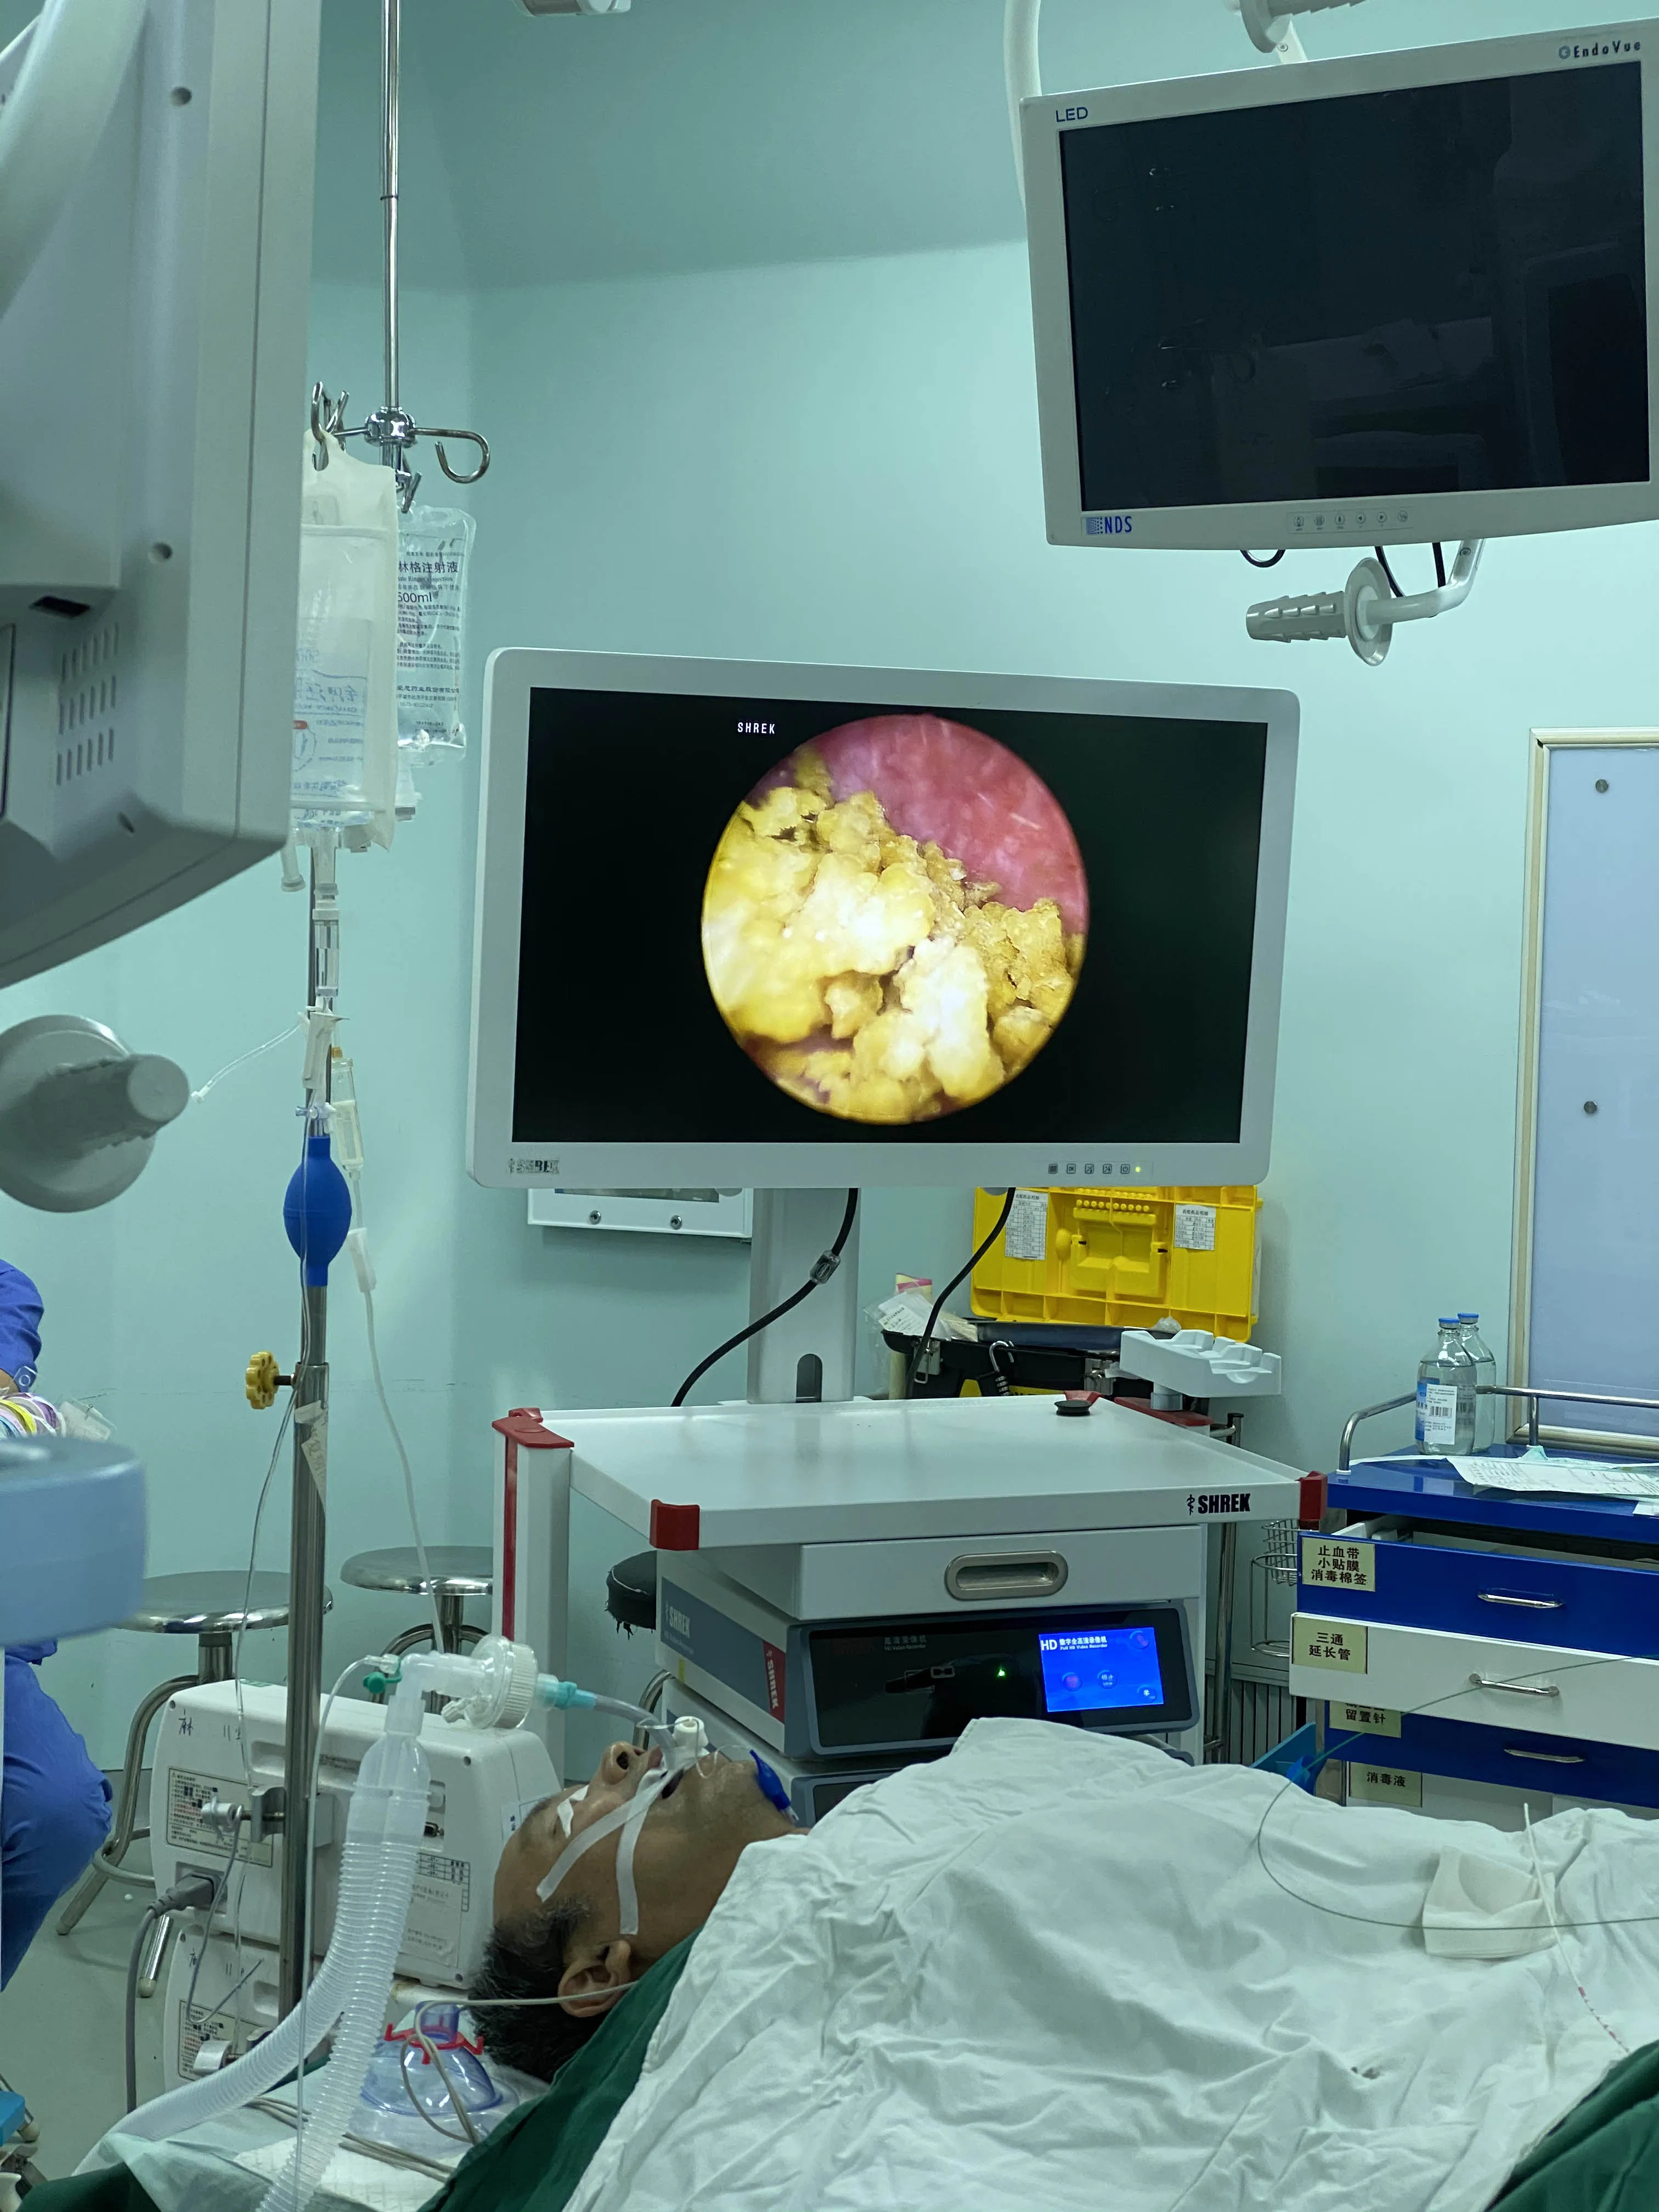 
High quality cheap 27 inch medical hd endoscopy monitor for laparoscopy 